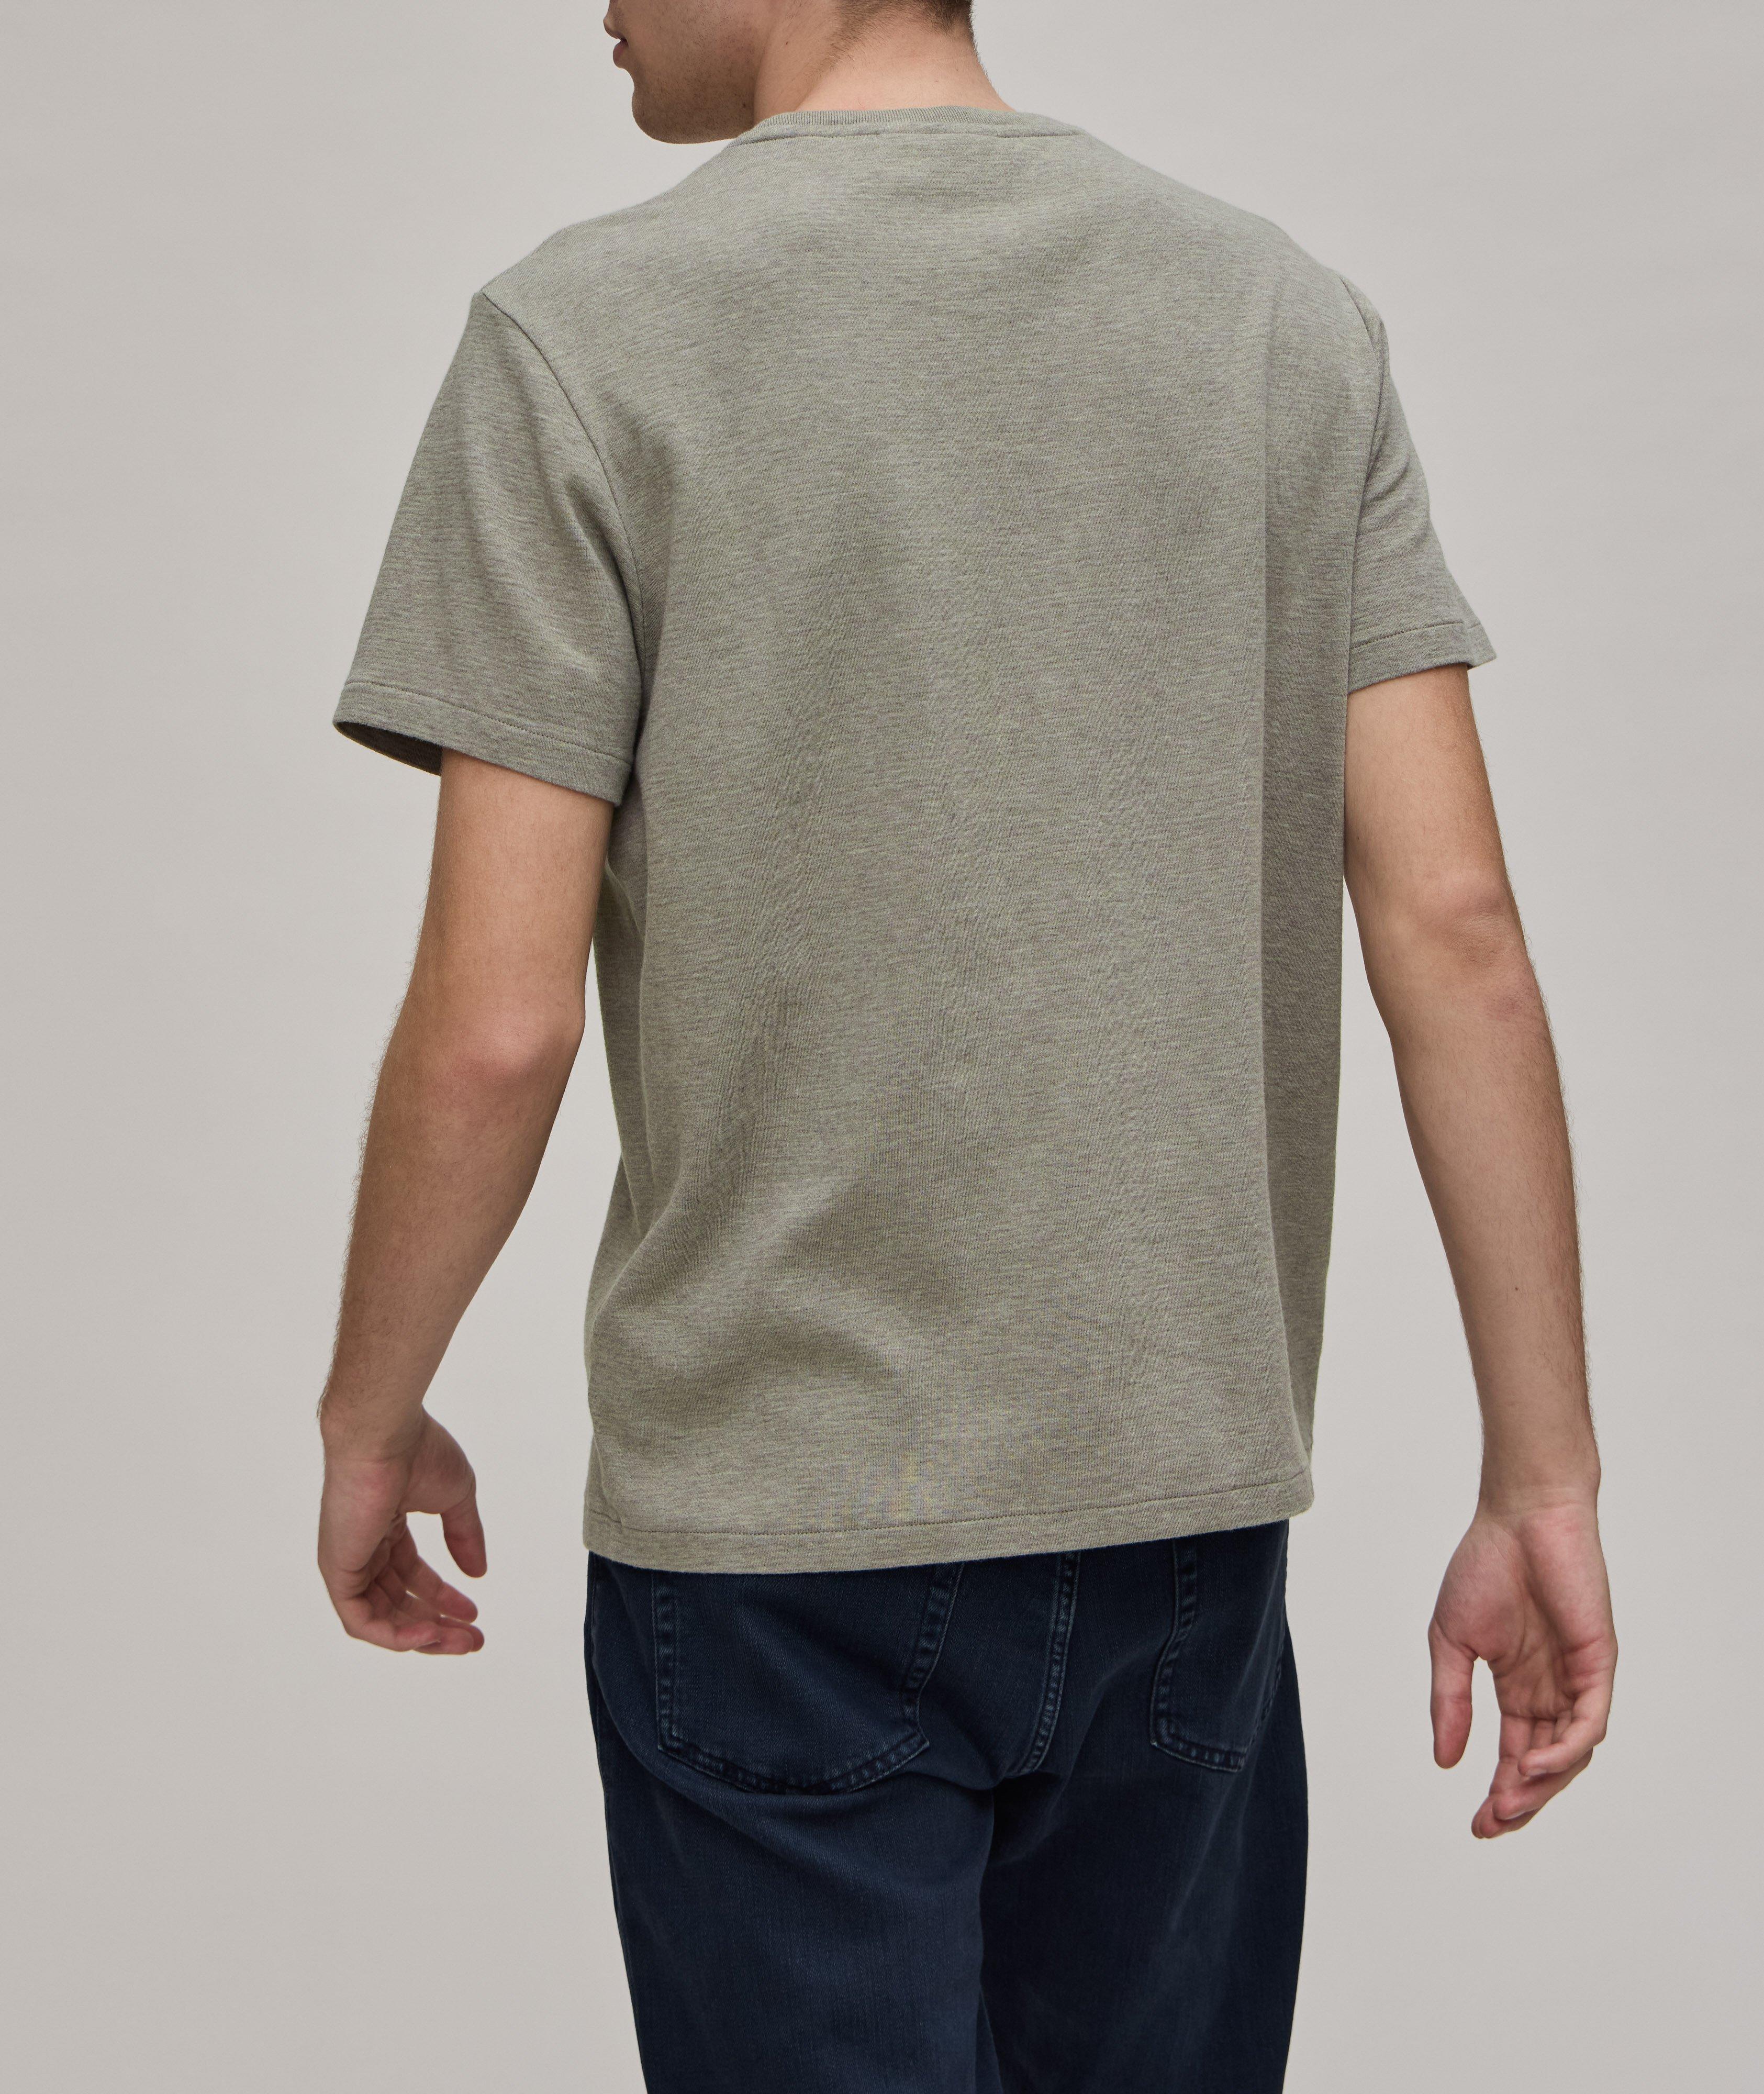 Duo Fold Cotton T-Shirt image 2